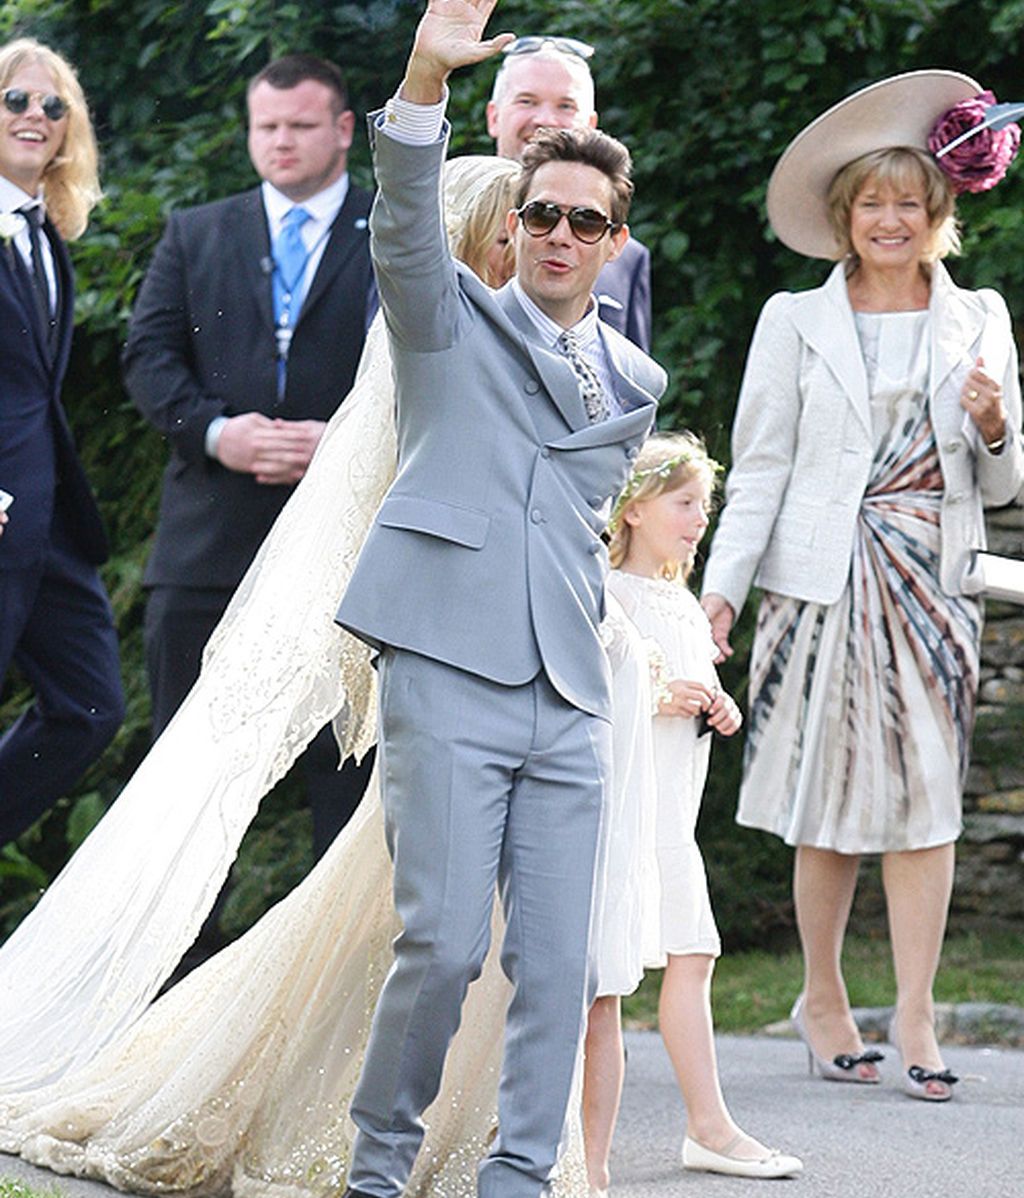 La boda de Kate Moss y Jamie Hince